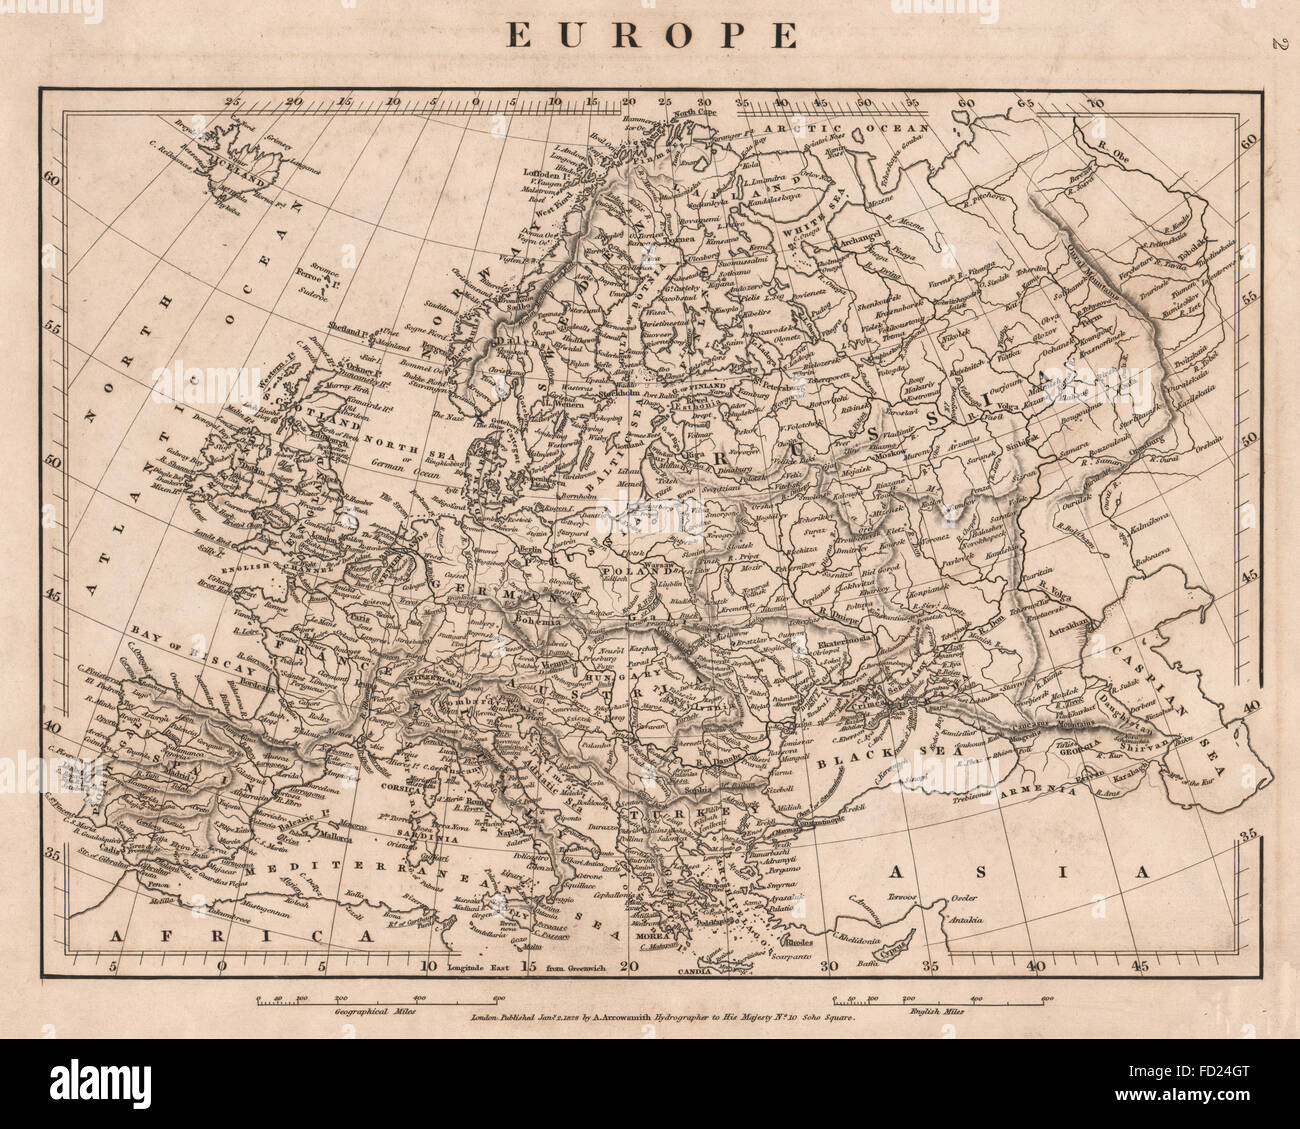 L'EUROPE : Carte de l'Europe. Contour original couleur. ARROWSMITH, 1828 Banque D'Images